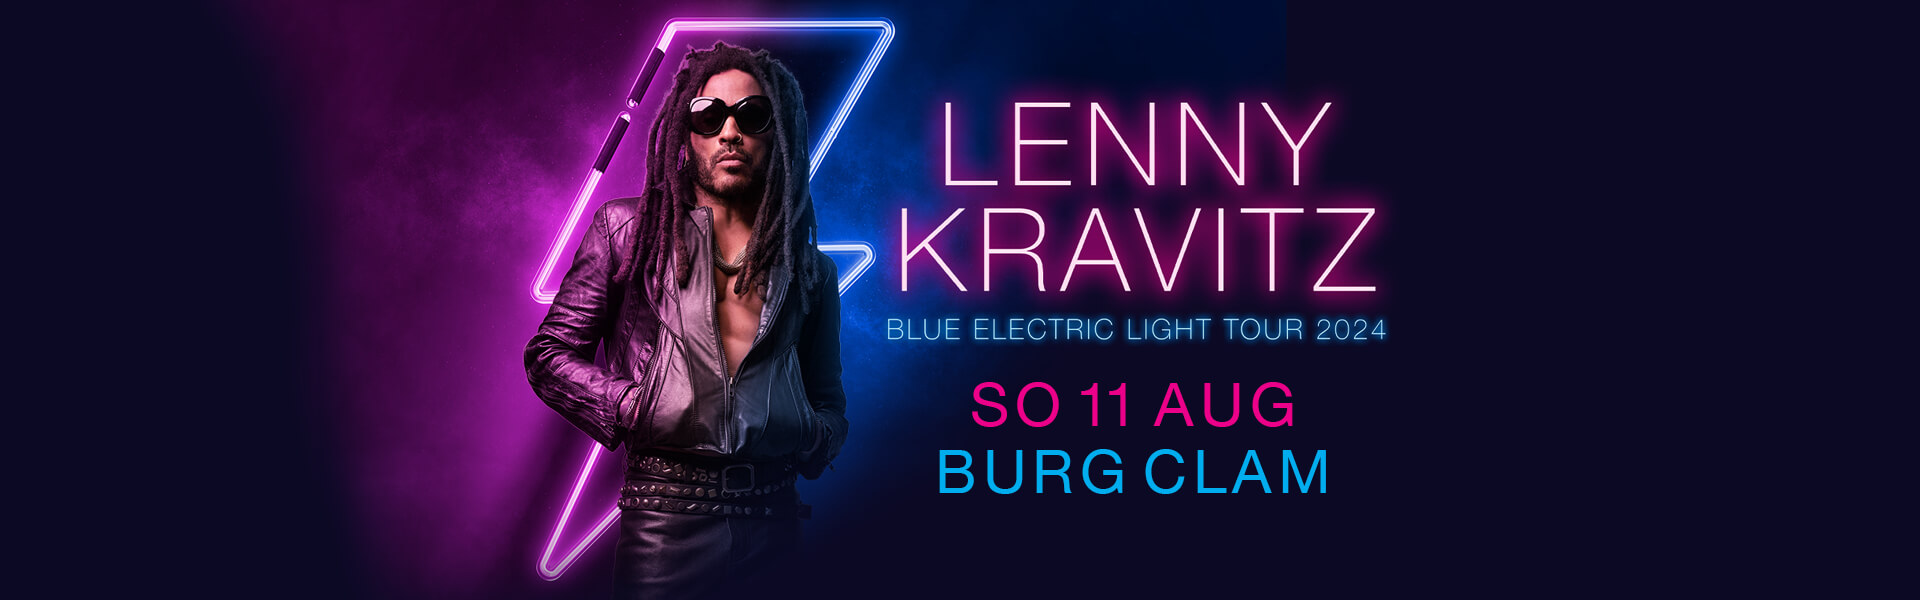 Lenny Kravitz Blue Electric Light 2024